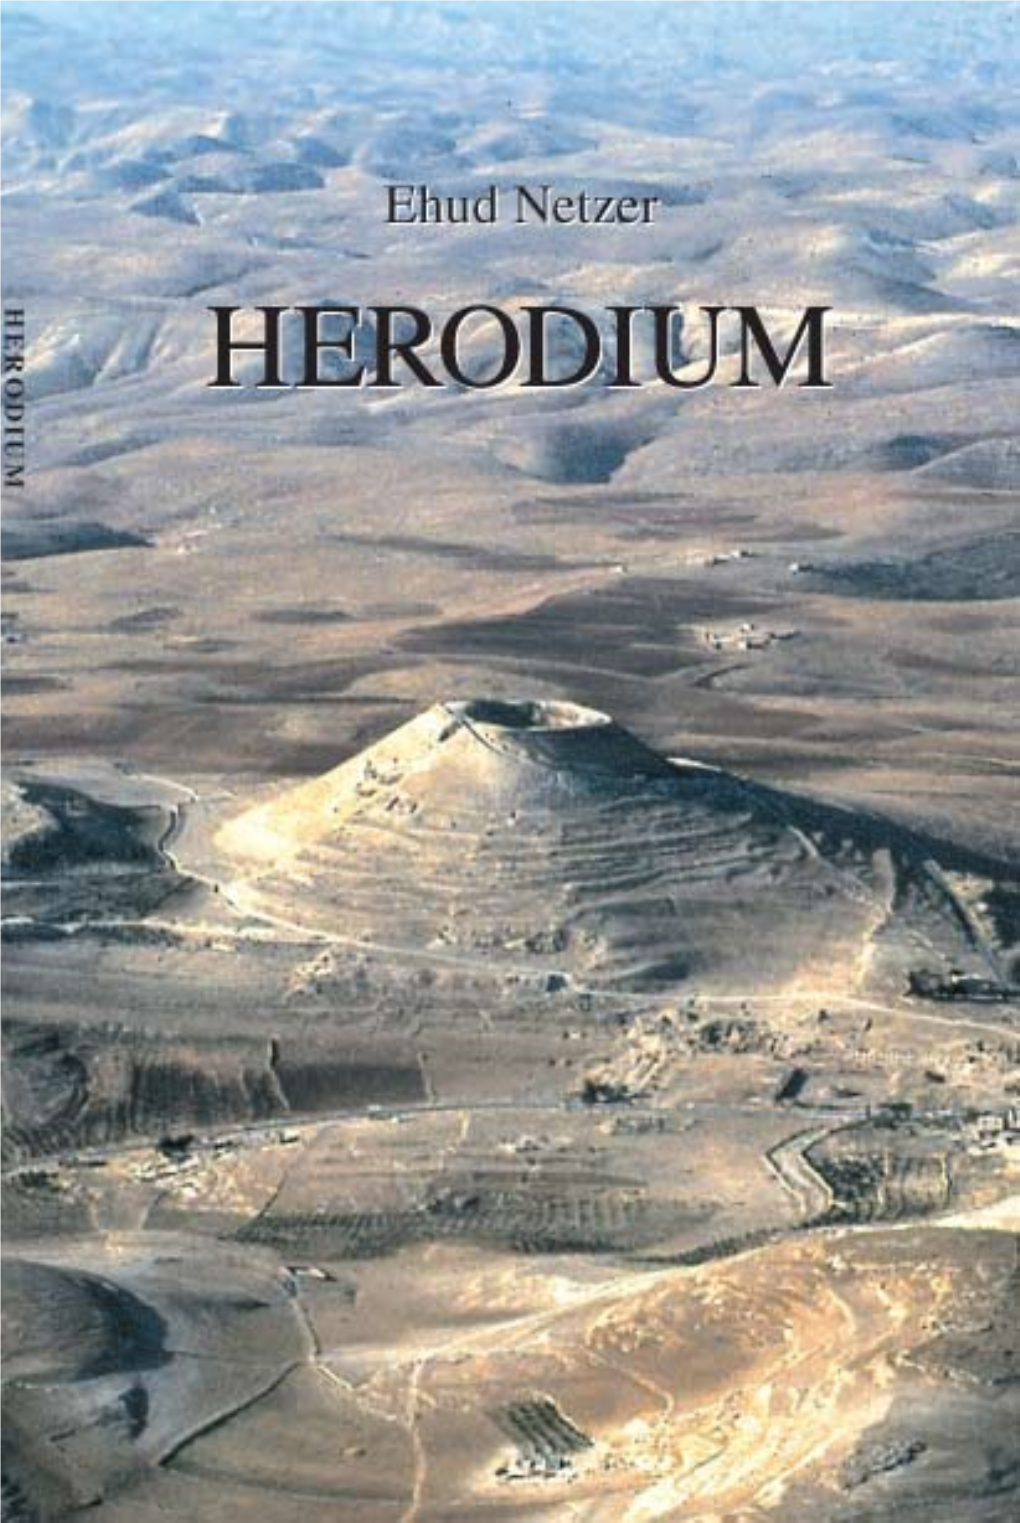 Netzer E., 1999. Herodium an Archaeological Guide, Jerusalem